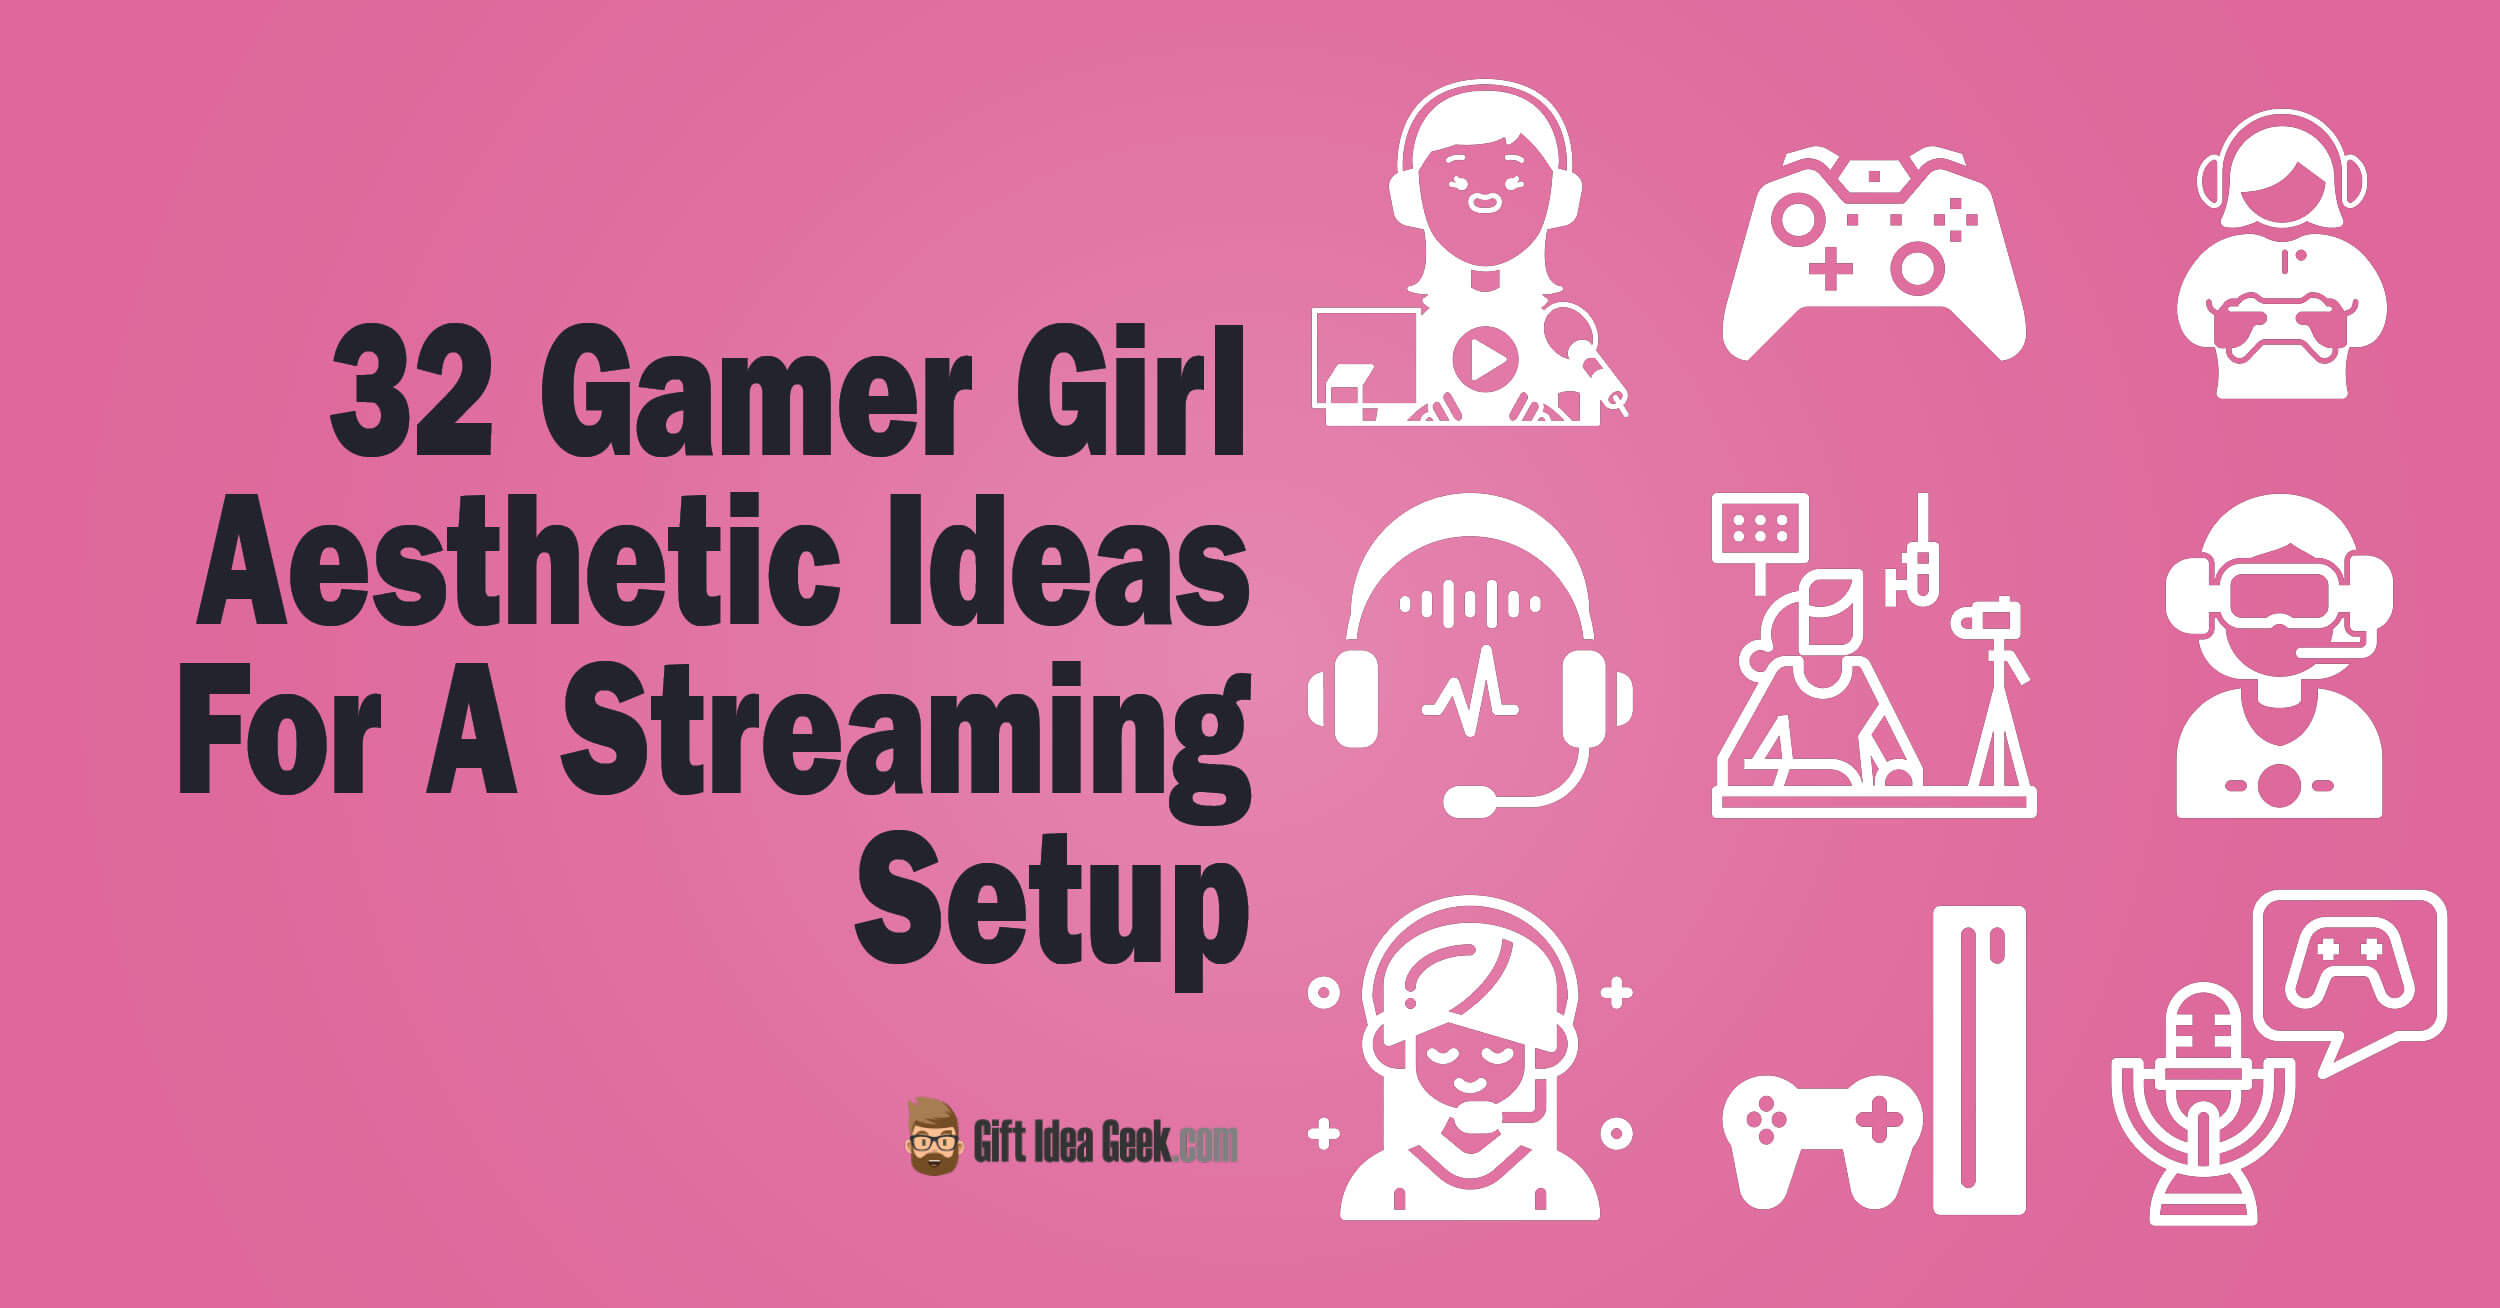 32 Gamer Girl Aesthetic Ideas For A Streaming Setup